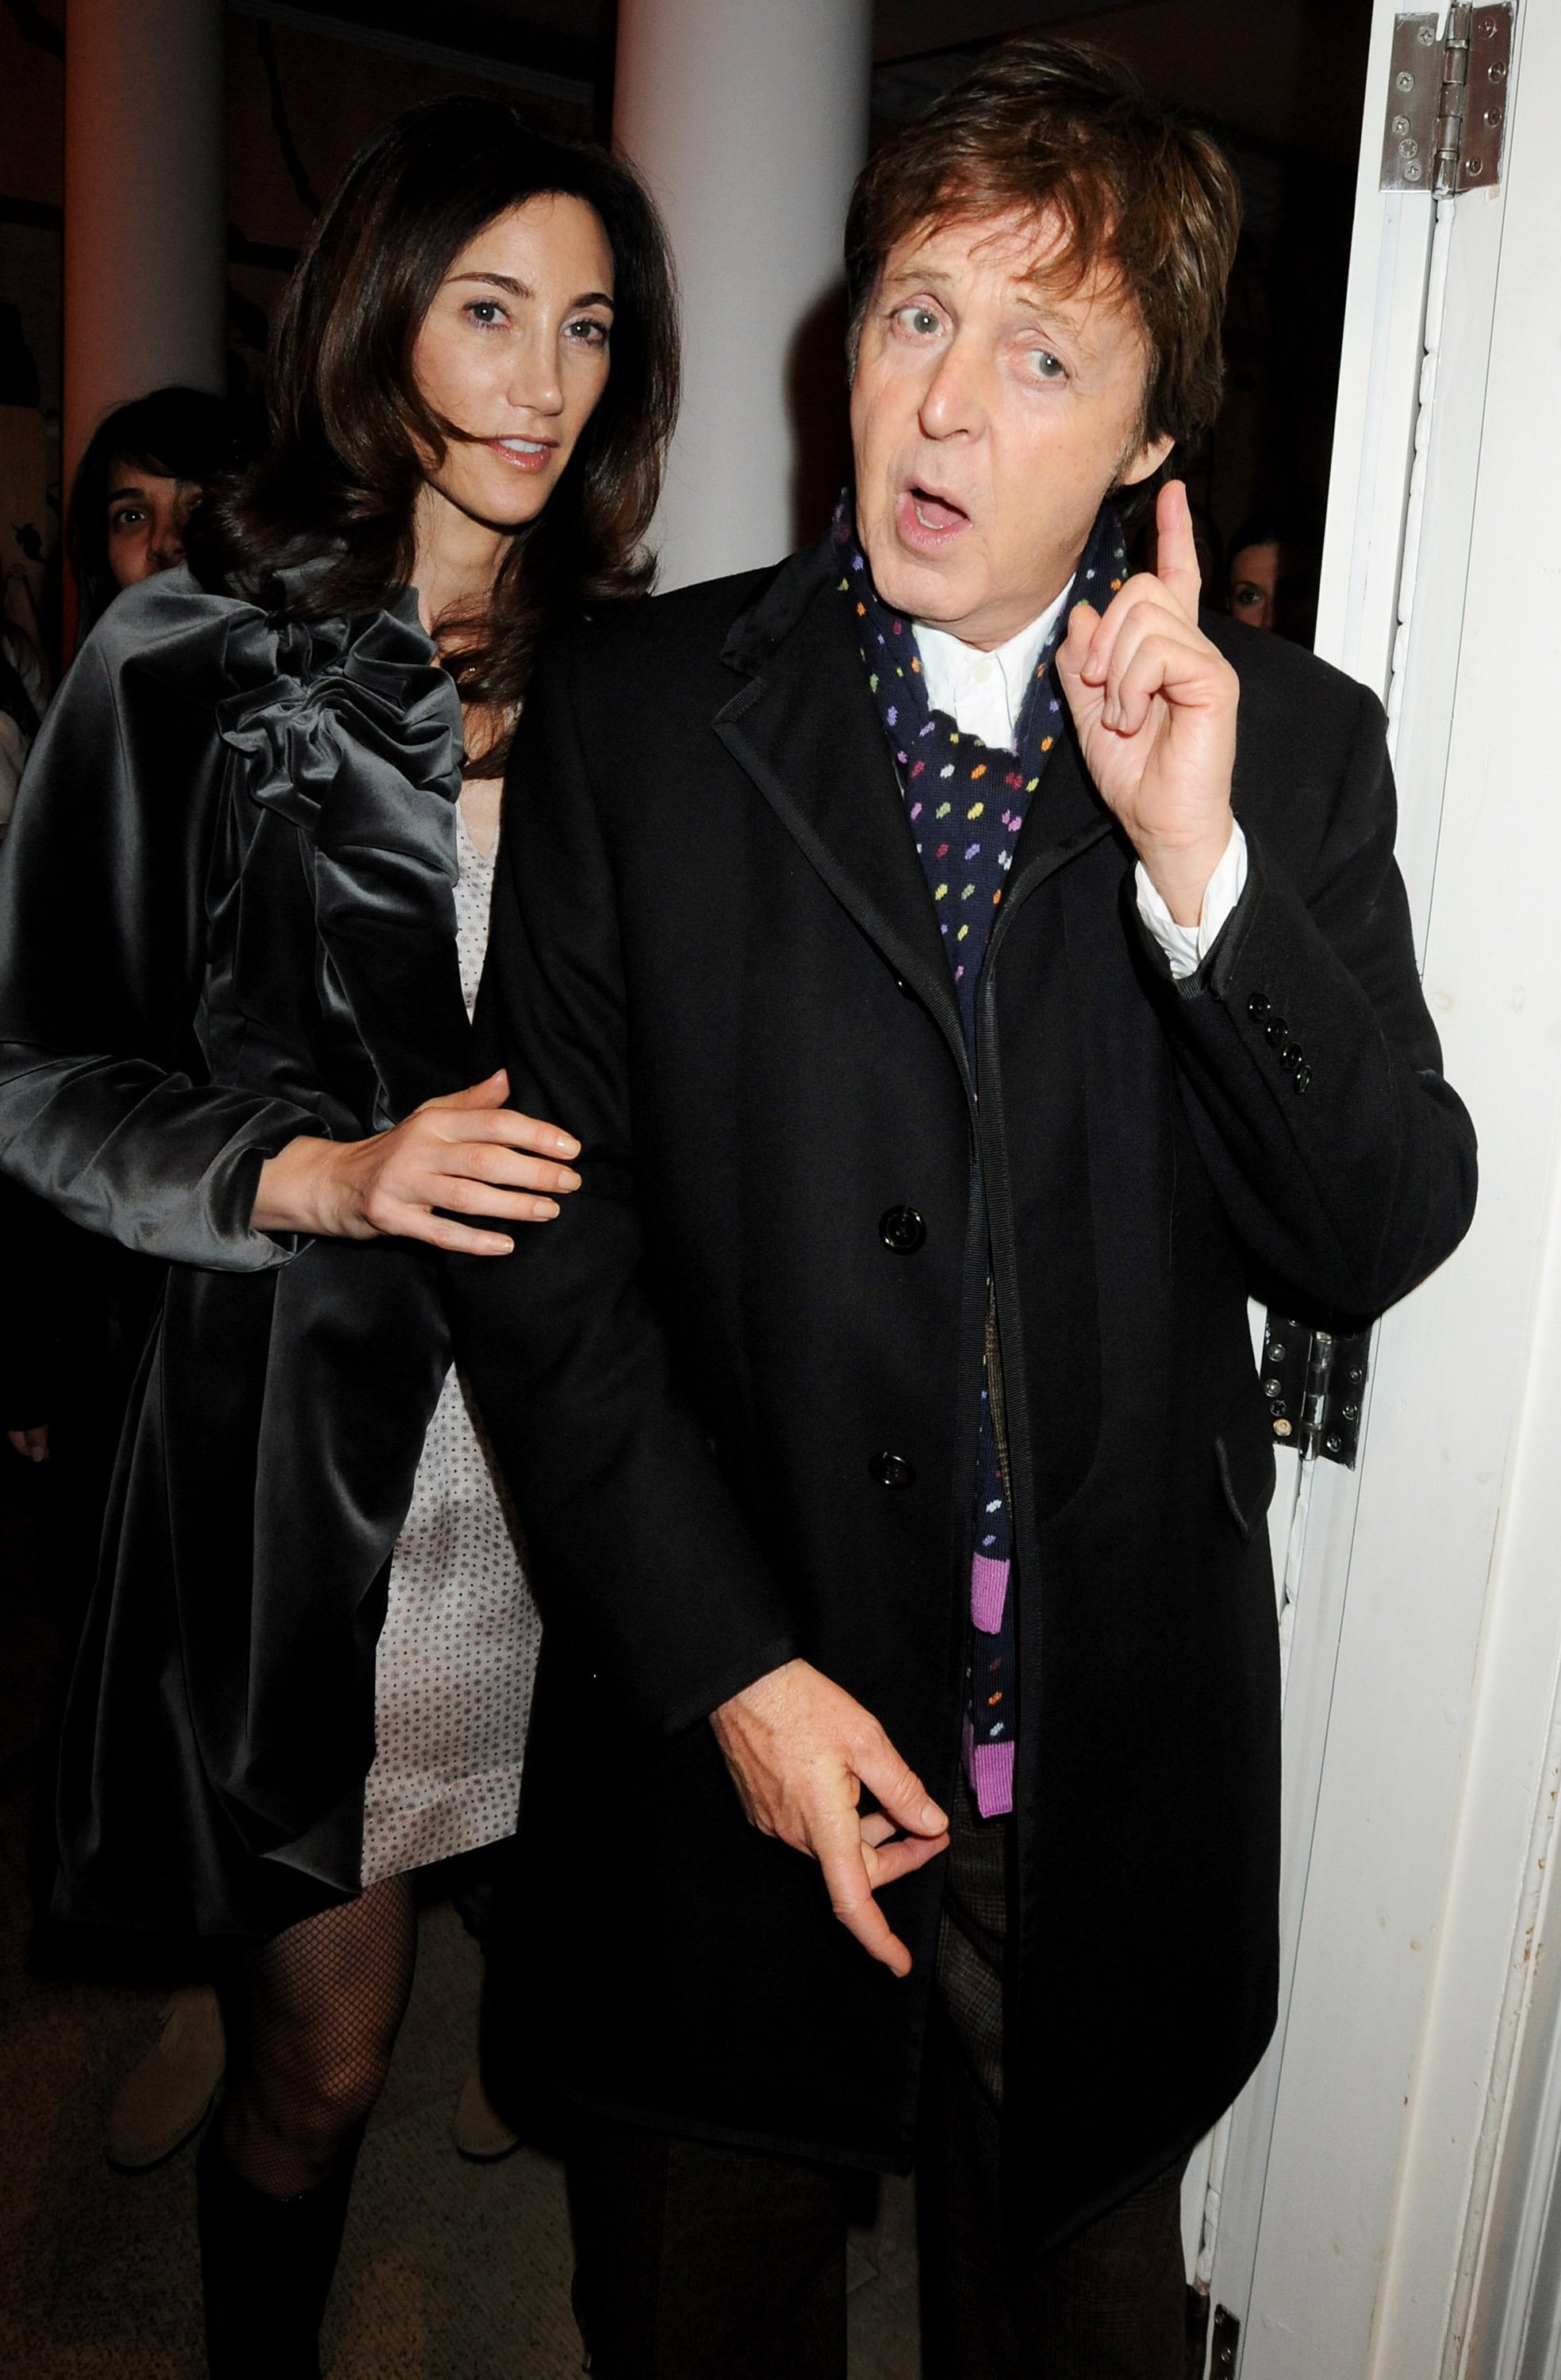 Sir Paul McCartney y Nancy Shevell asisten a una fiesta privada en la tienda Stella McCartney, el 24 de noviembre de 2008 en Londres, Inglaterra.